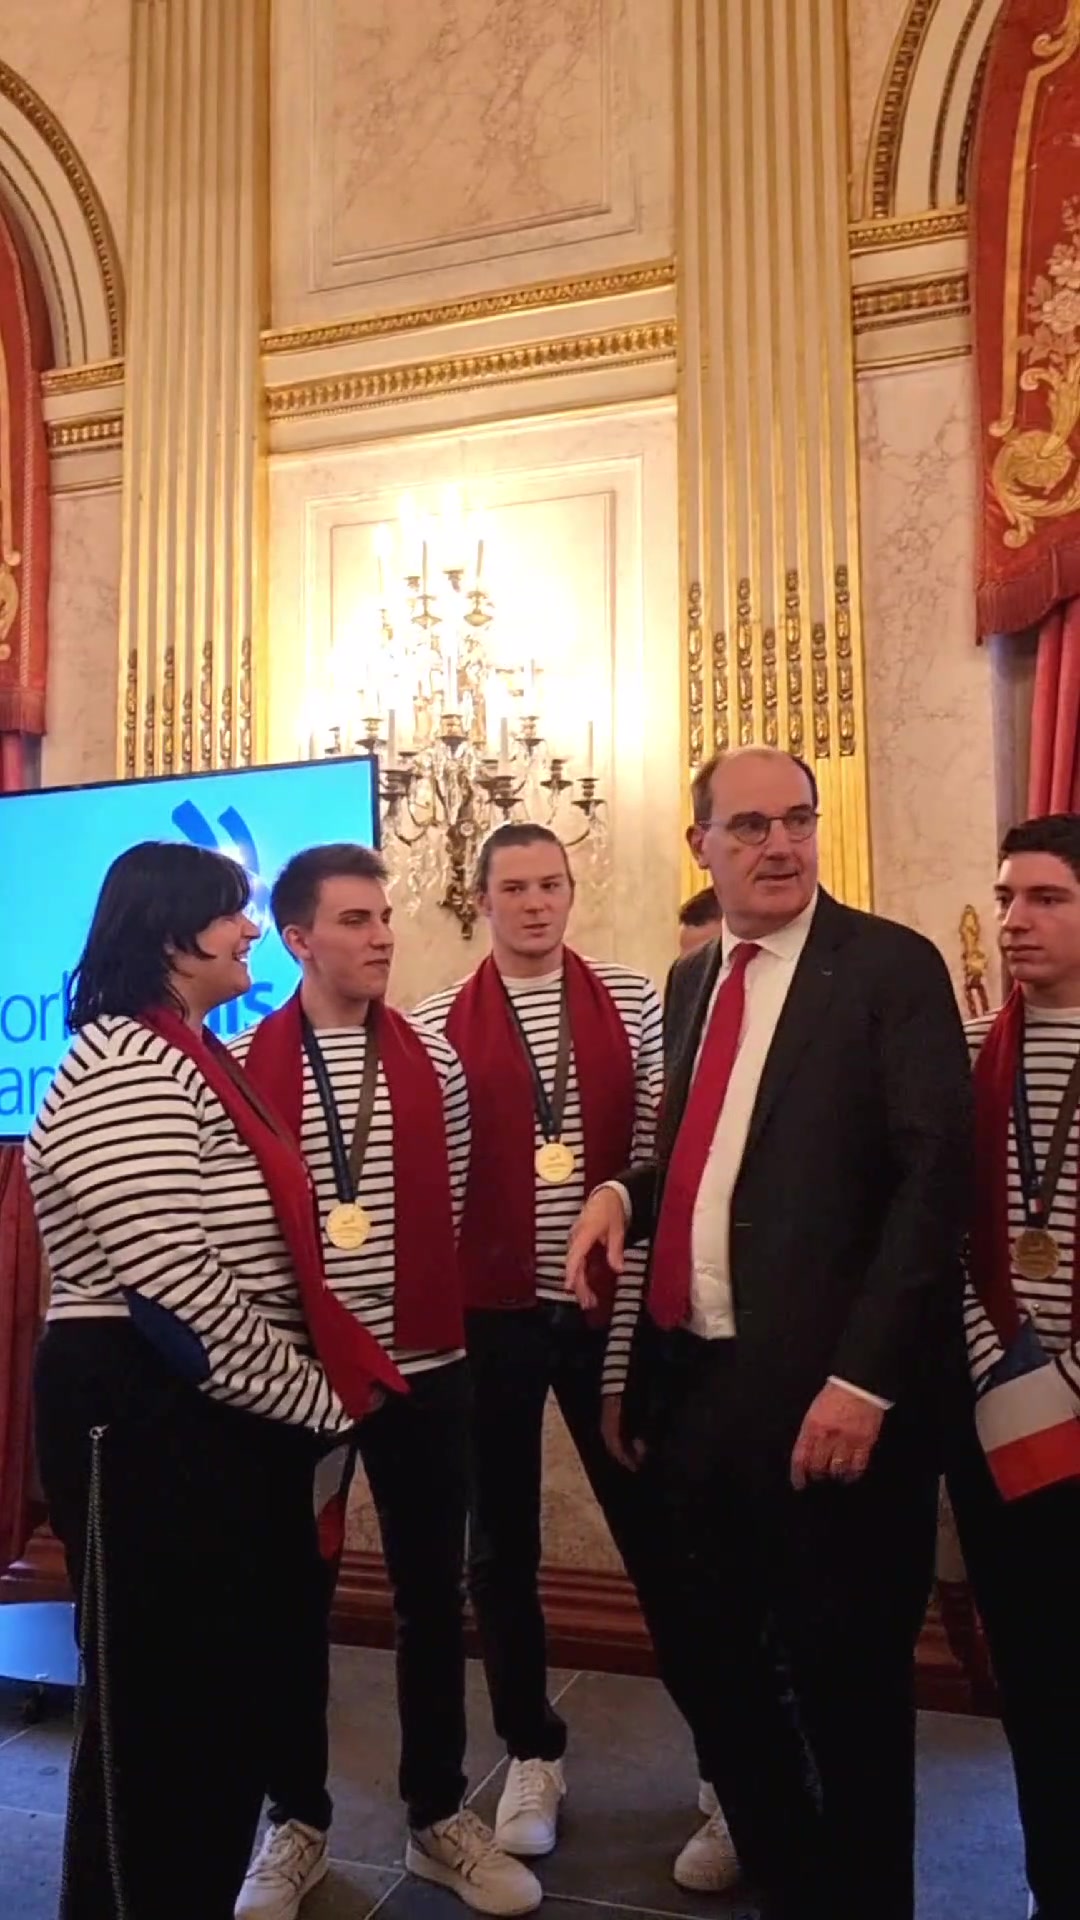 Les membres de l'Équipe de France du BTP ont été révélés à l'Assemblée nationale. 👏 Bravo à ces ...